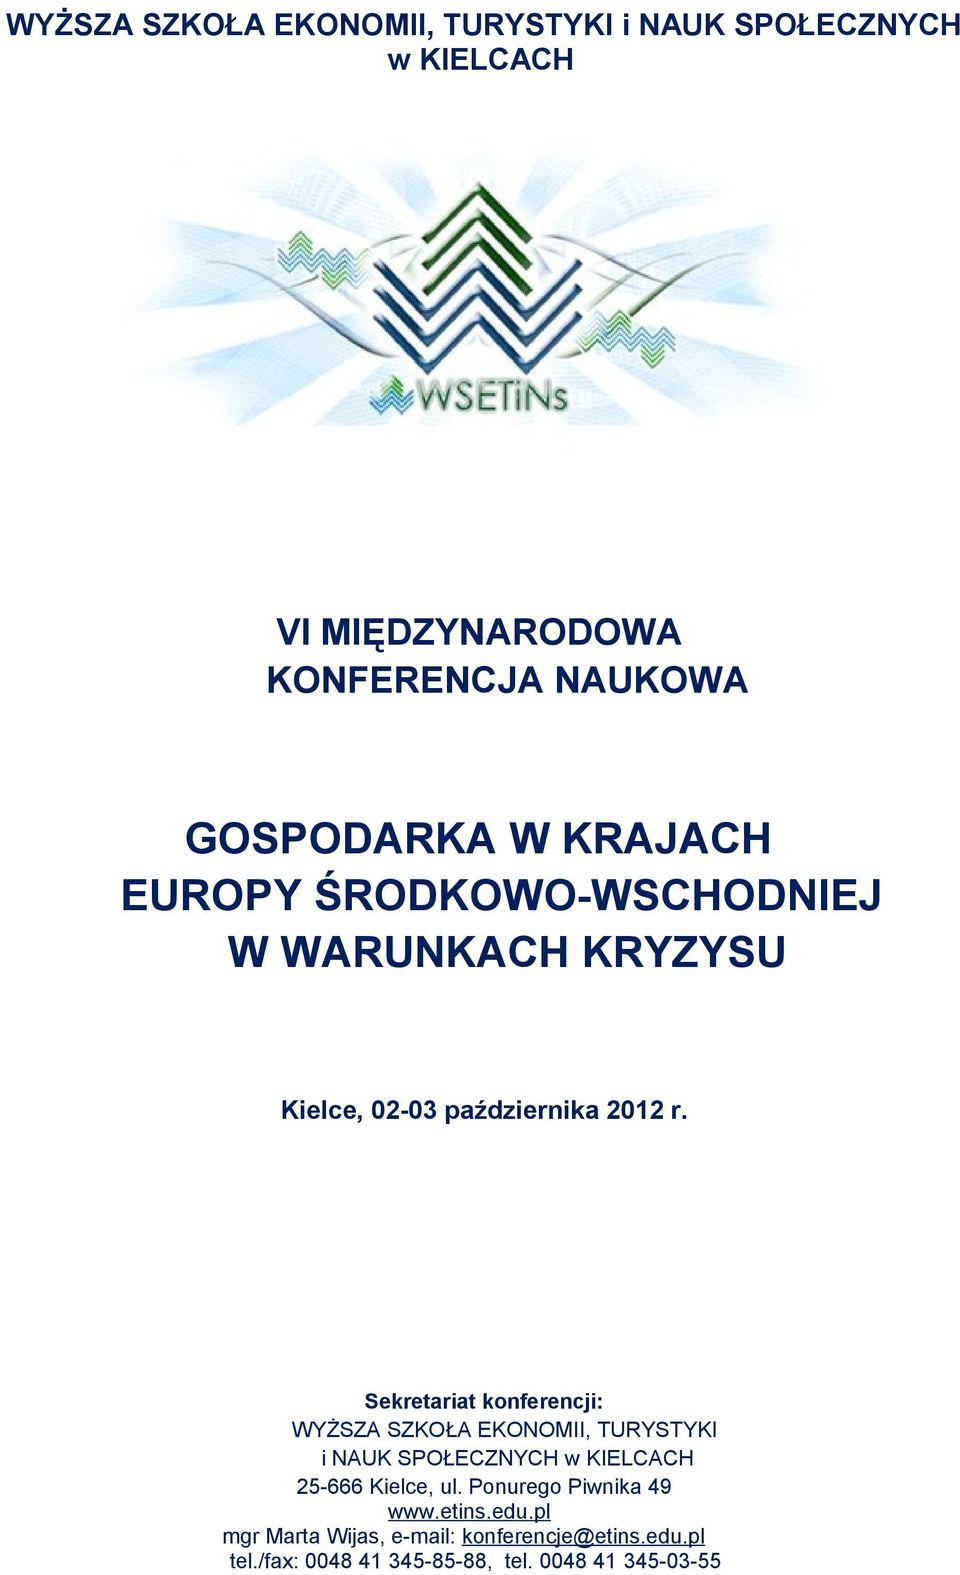 Sekretariat konferencji: WYŻSZA SZKOŁA EKONOMII, TURYSTYKI i NAUK SPOŁECZNYCH w KIELCACH 25-666 Kielce, ul.